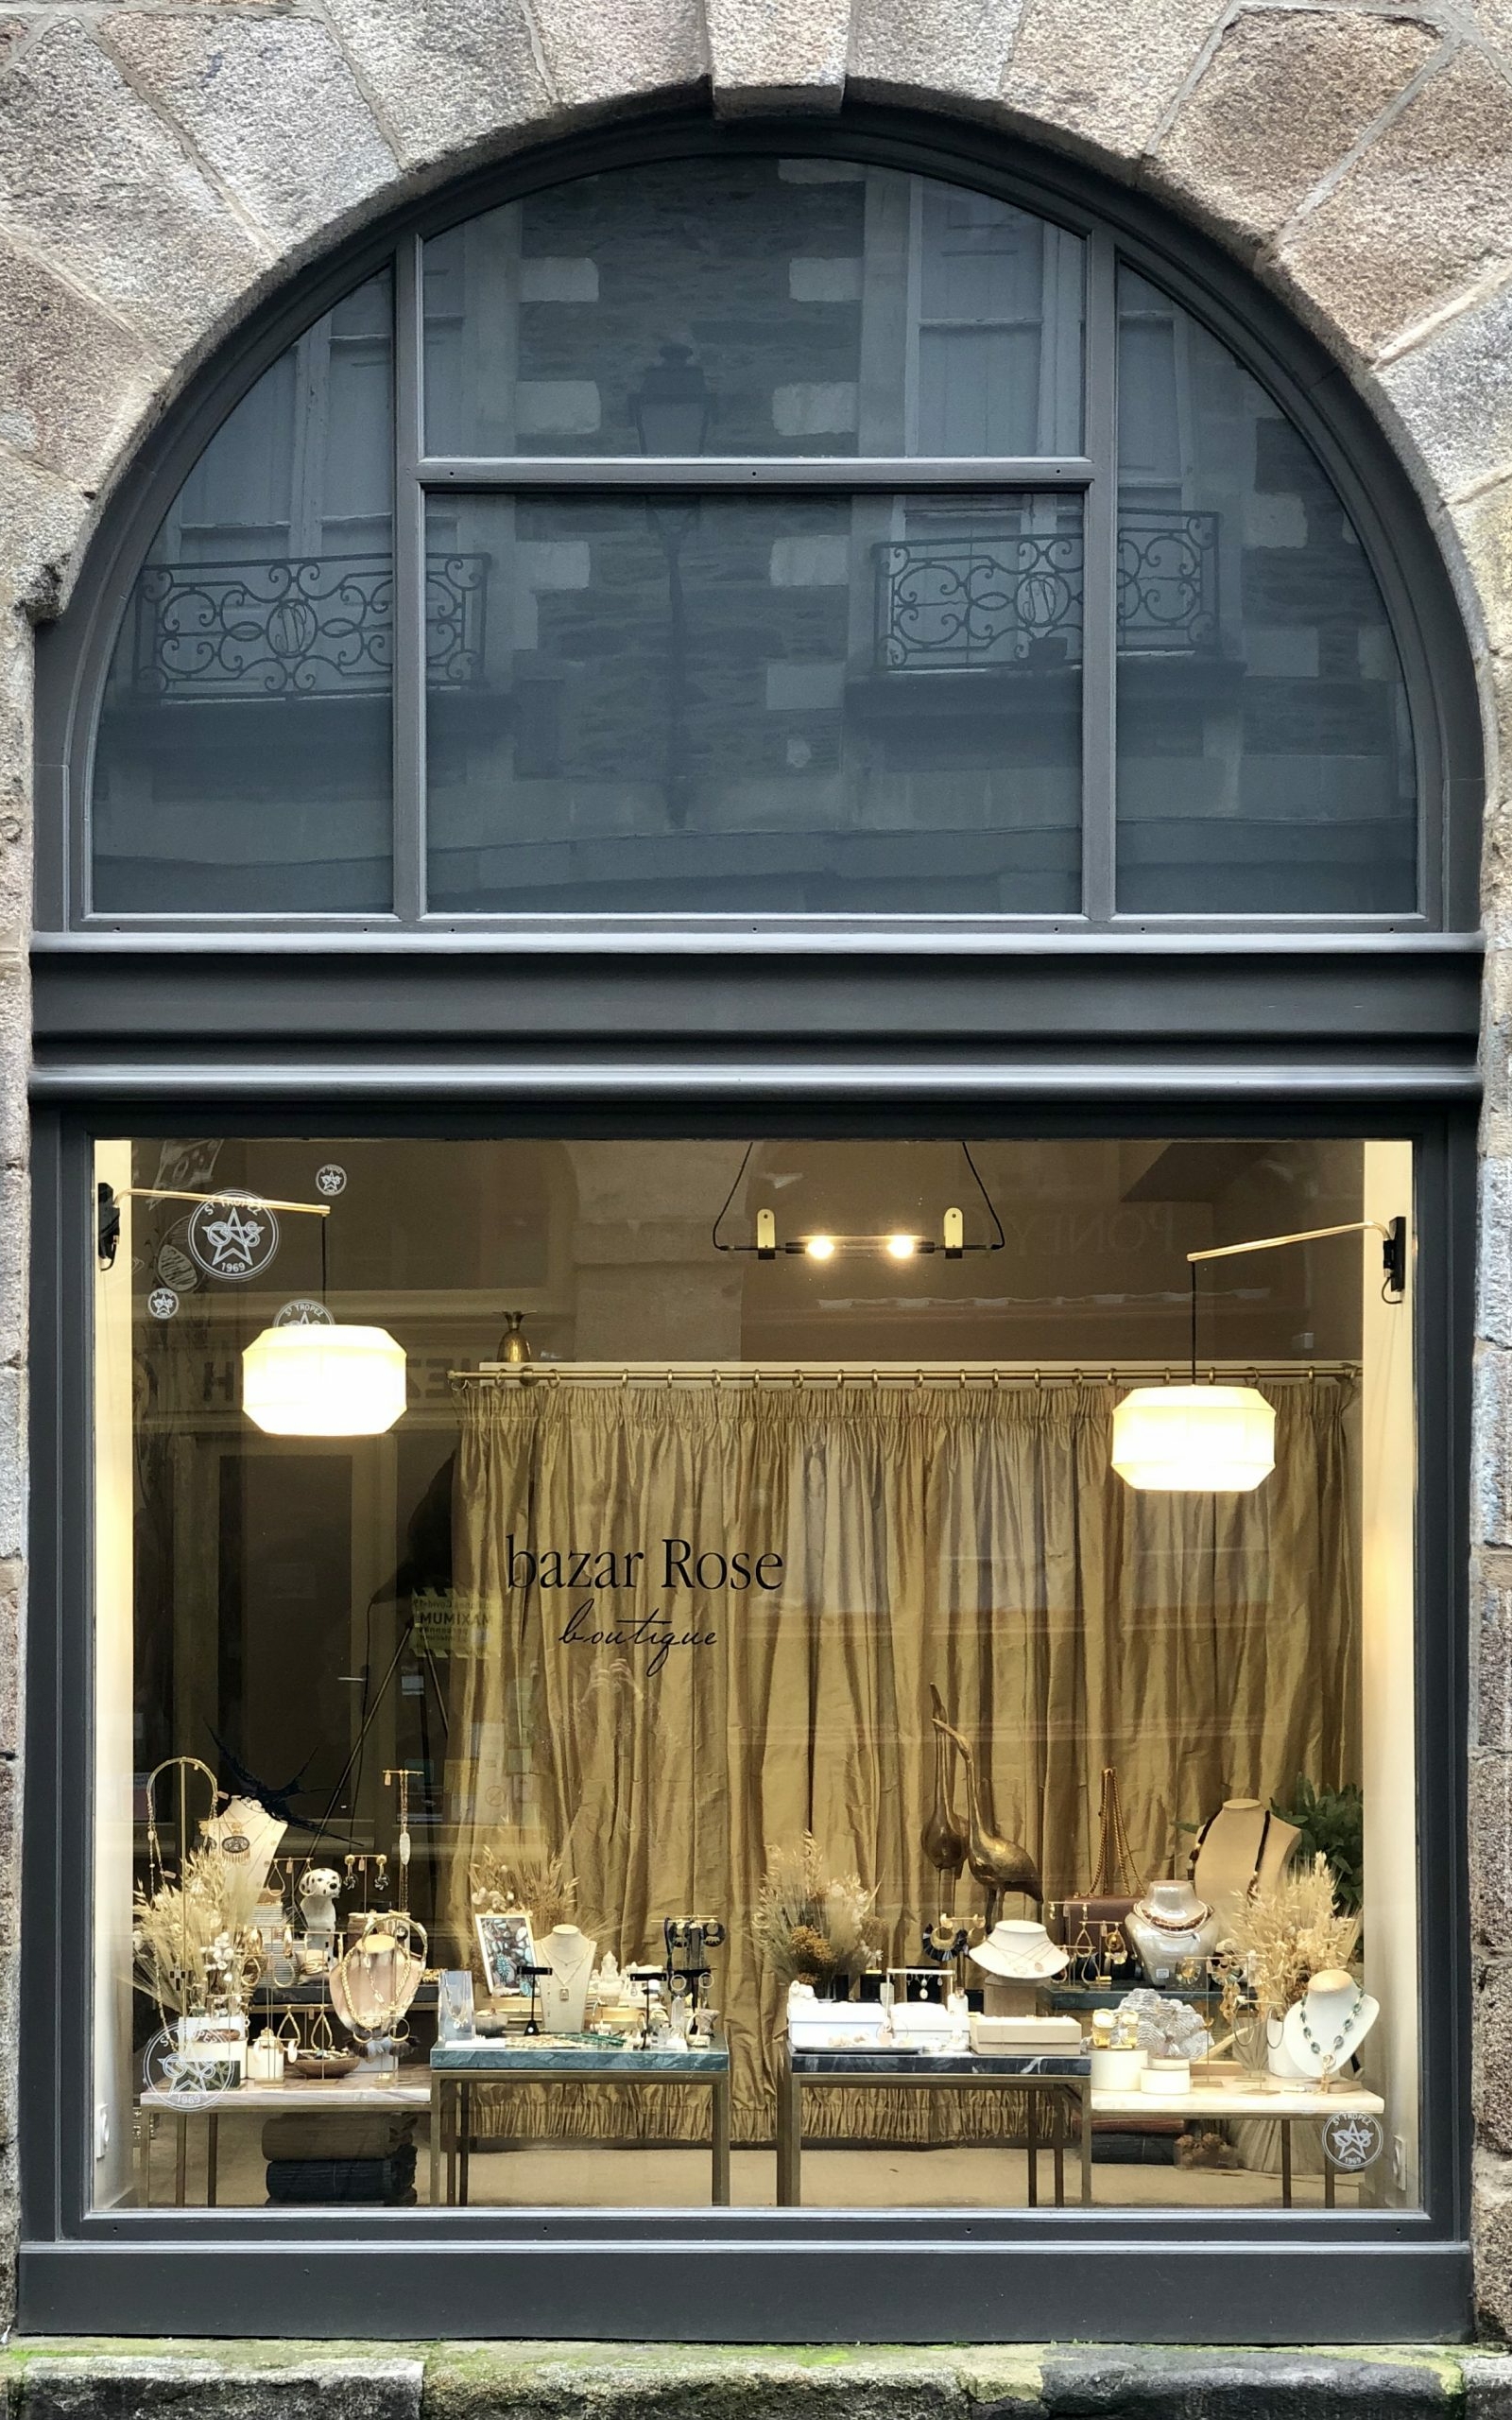 rénovation de la façade de la boutique Bazar Rose à Rennes